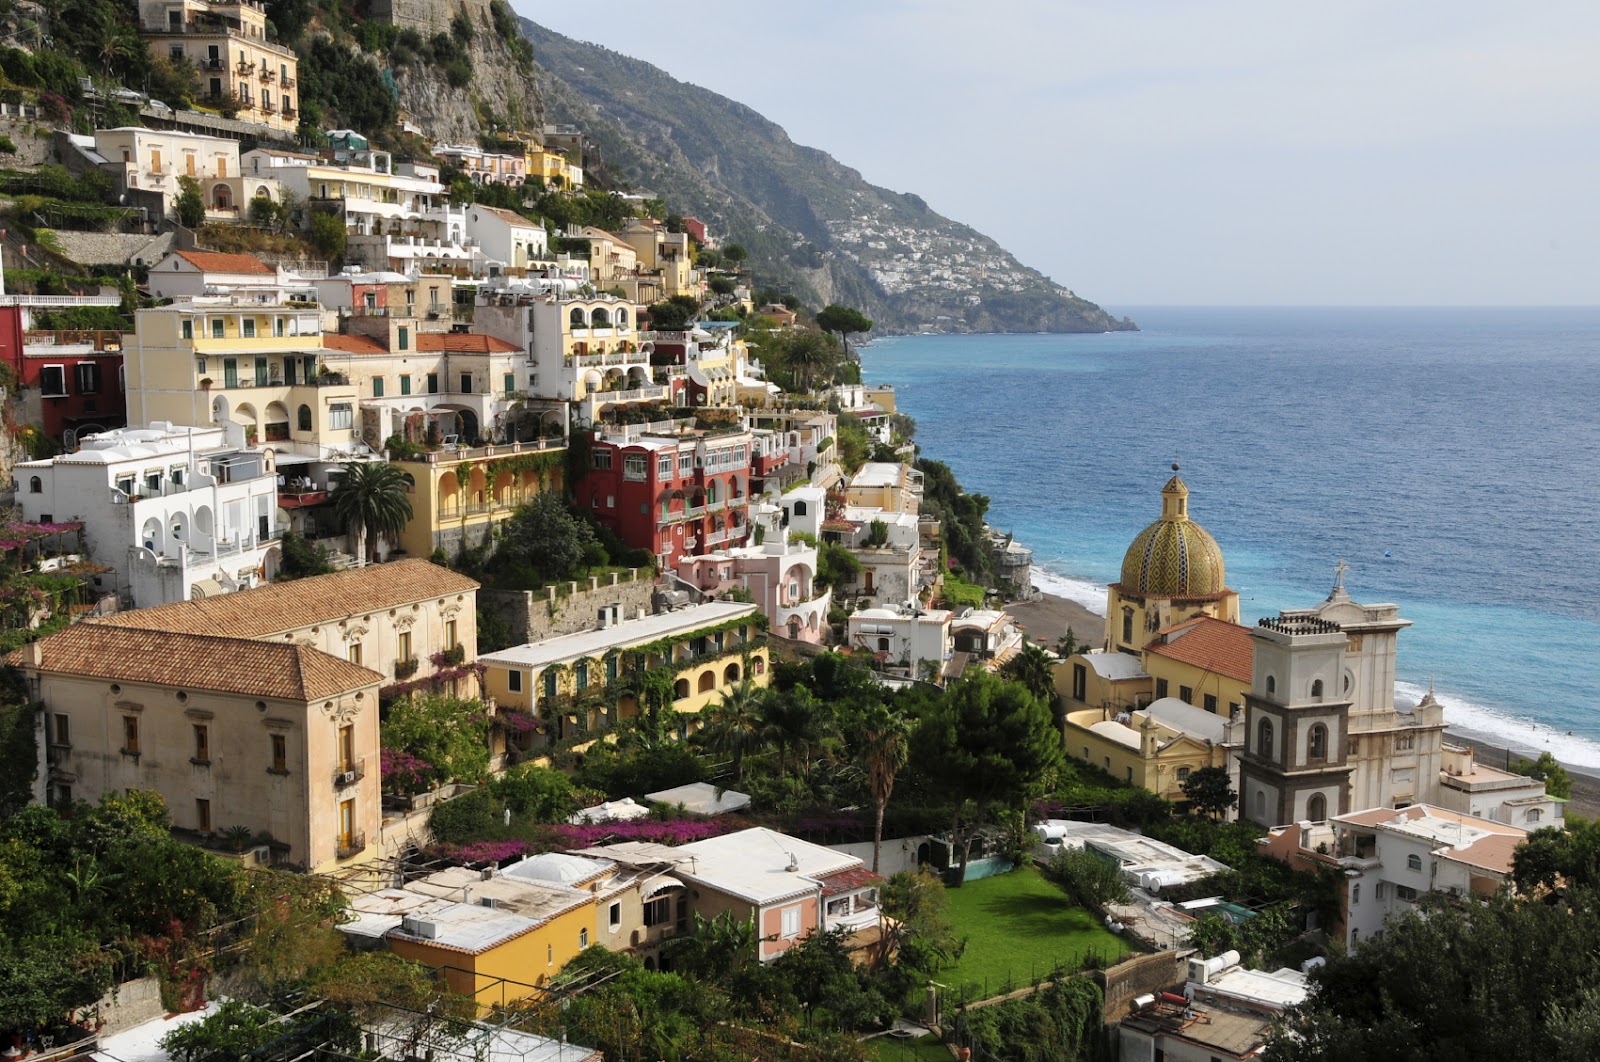 positano photo for app Kuda na medeni mesec: Italija 